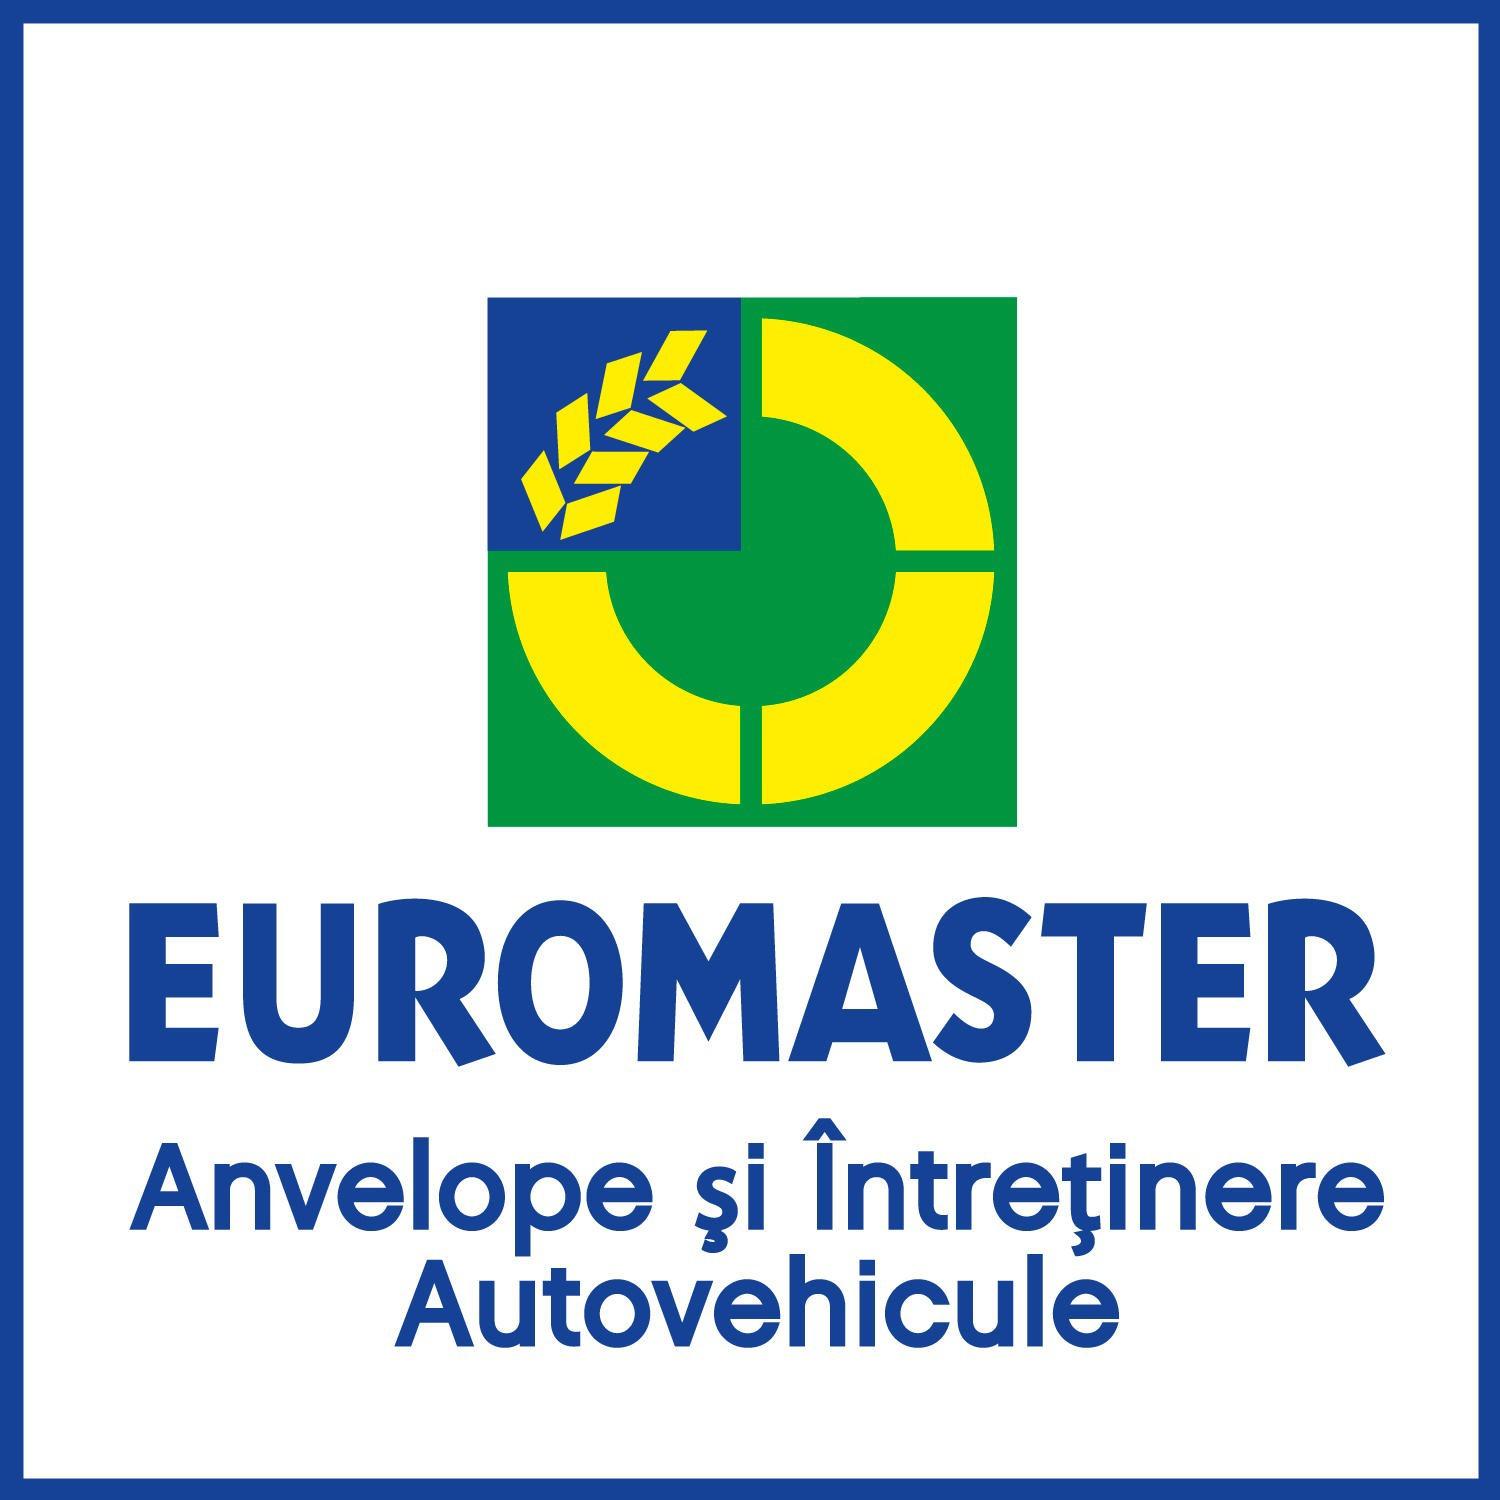 Euromaster Tenet 1 Logo